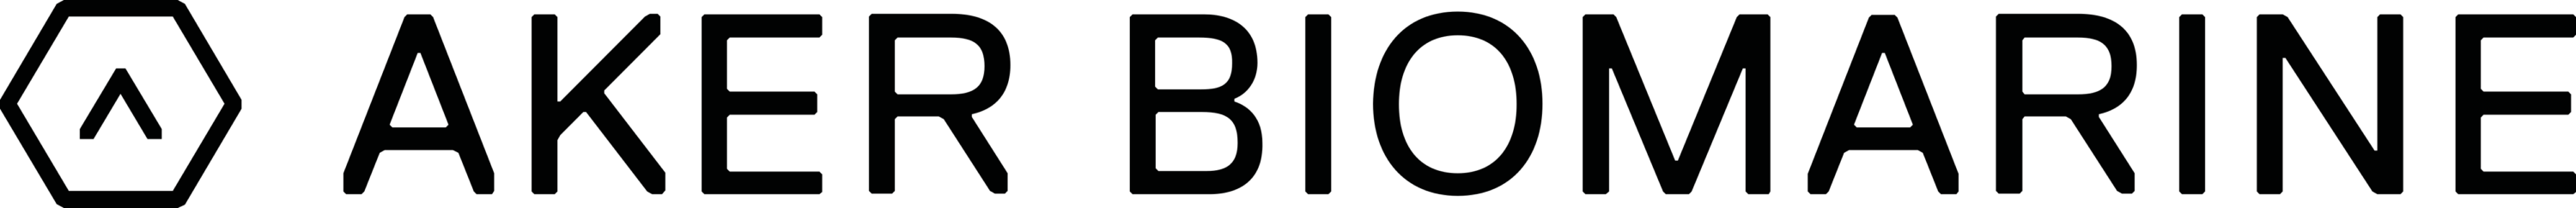 Aker BioMarine Logo